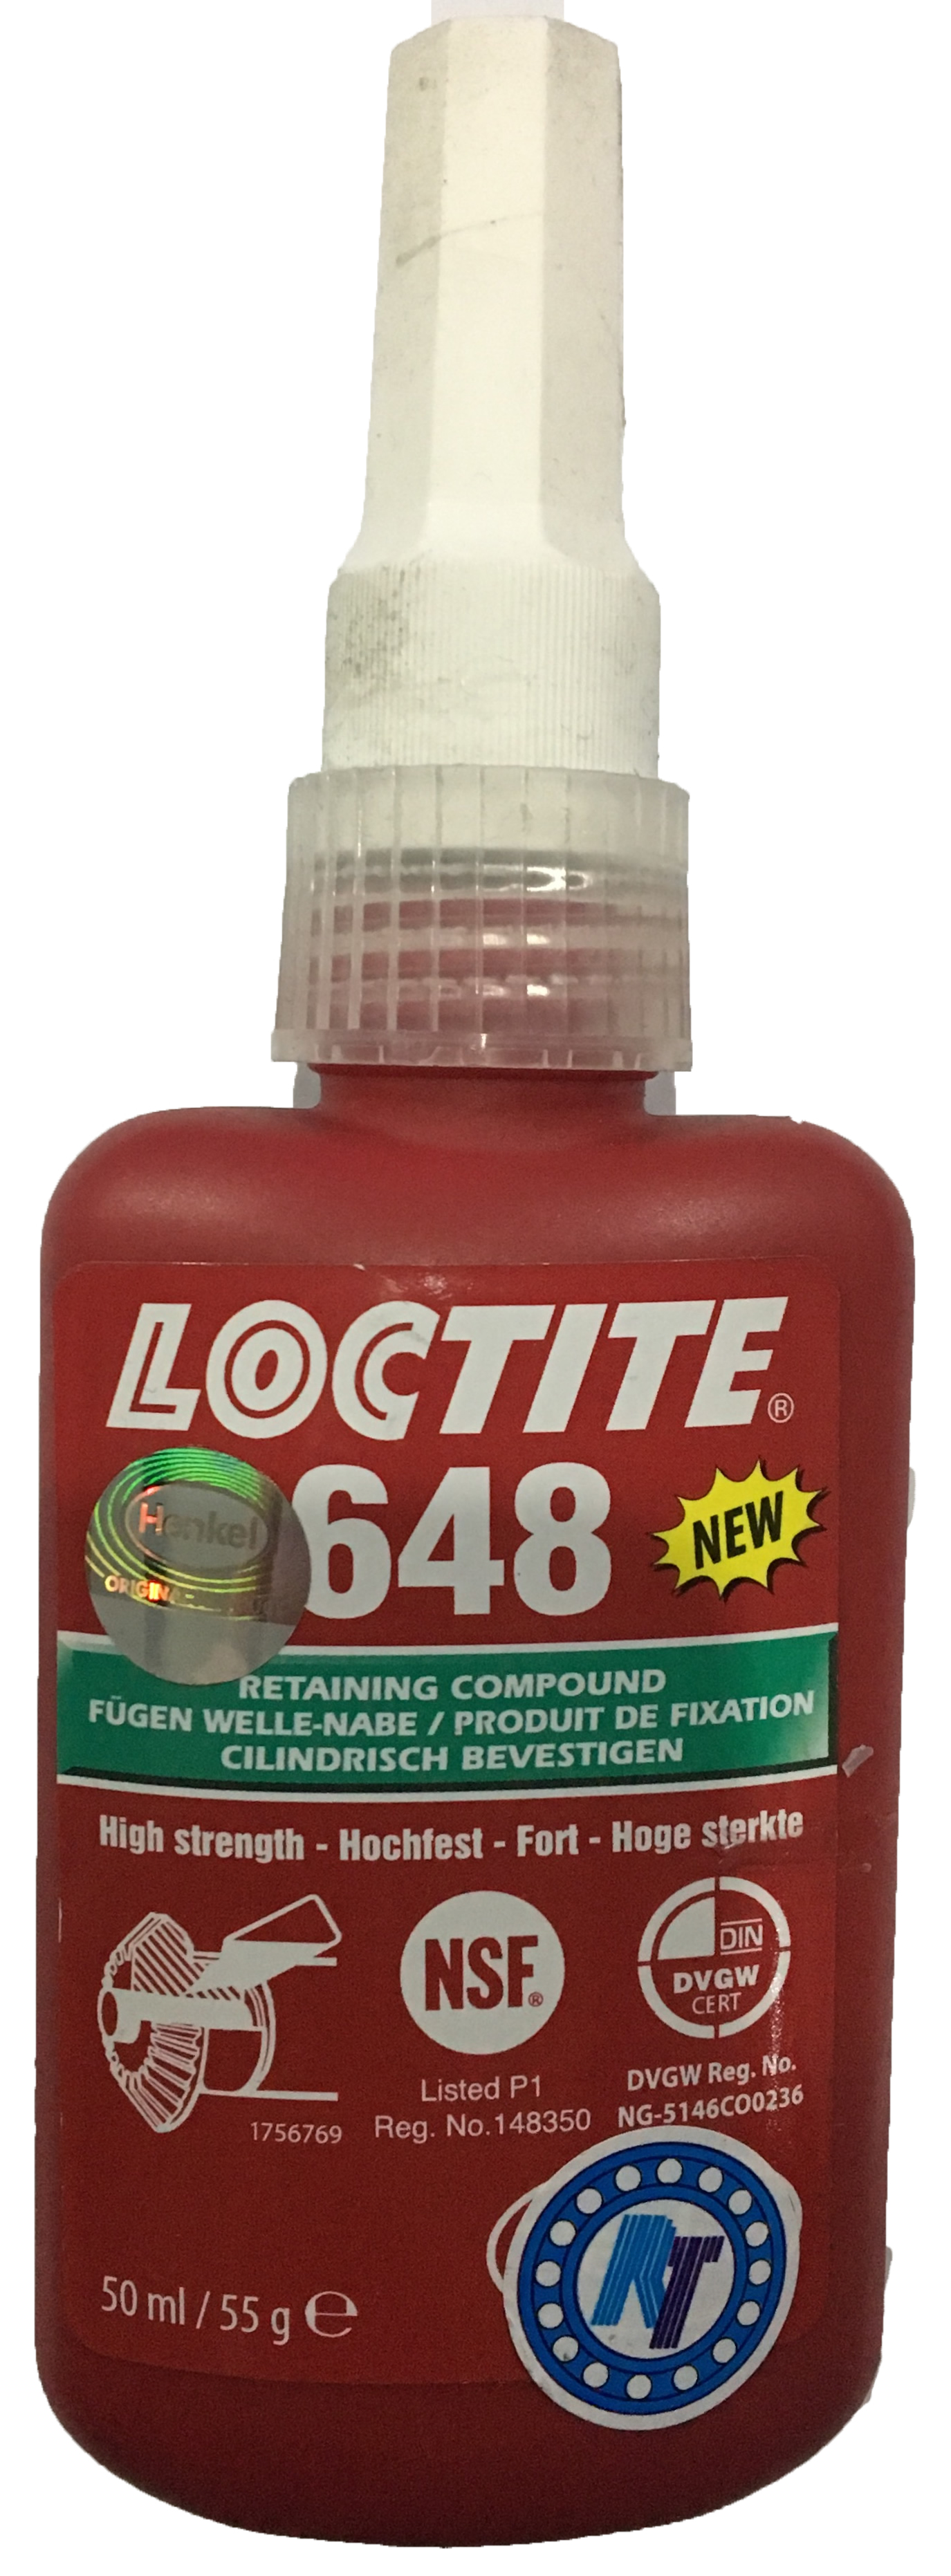 Loctite648,1804416,loctite